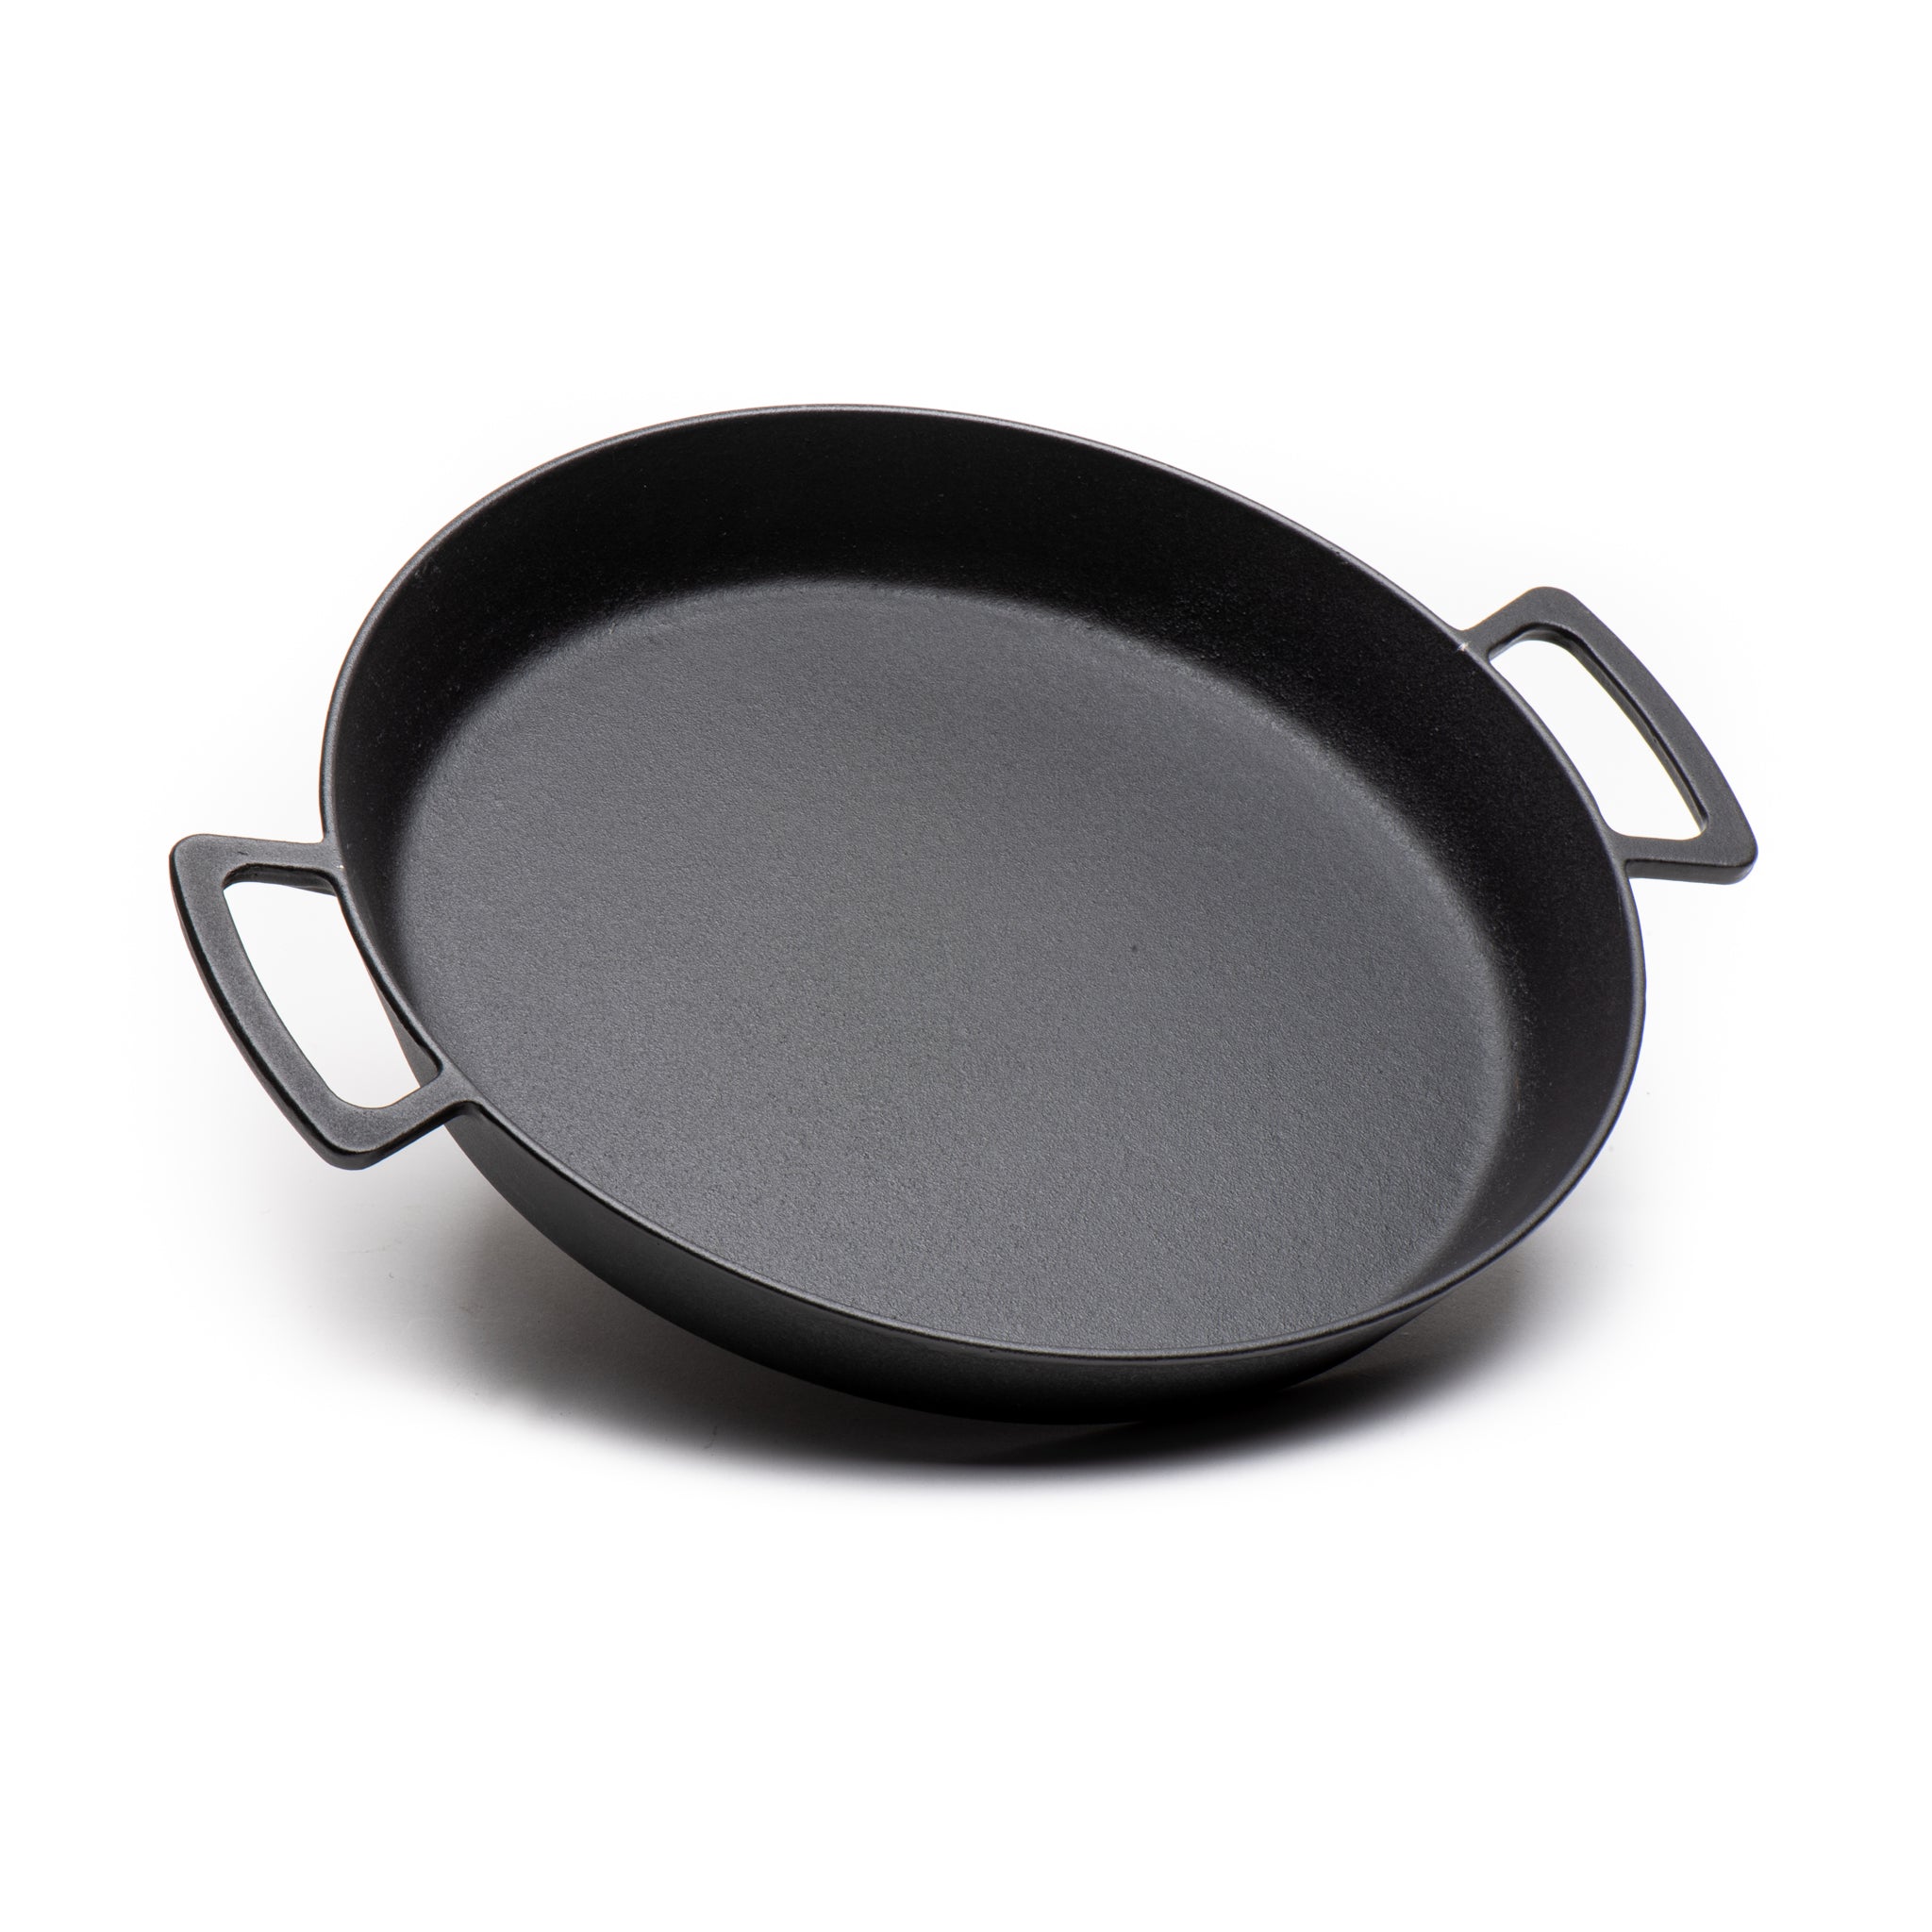 Paella/Skillet Pan – Multi-Cooking Surface